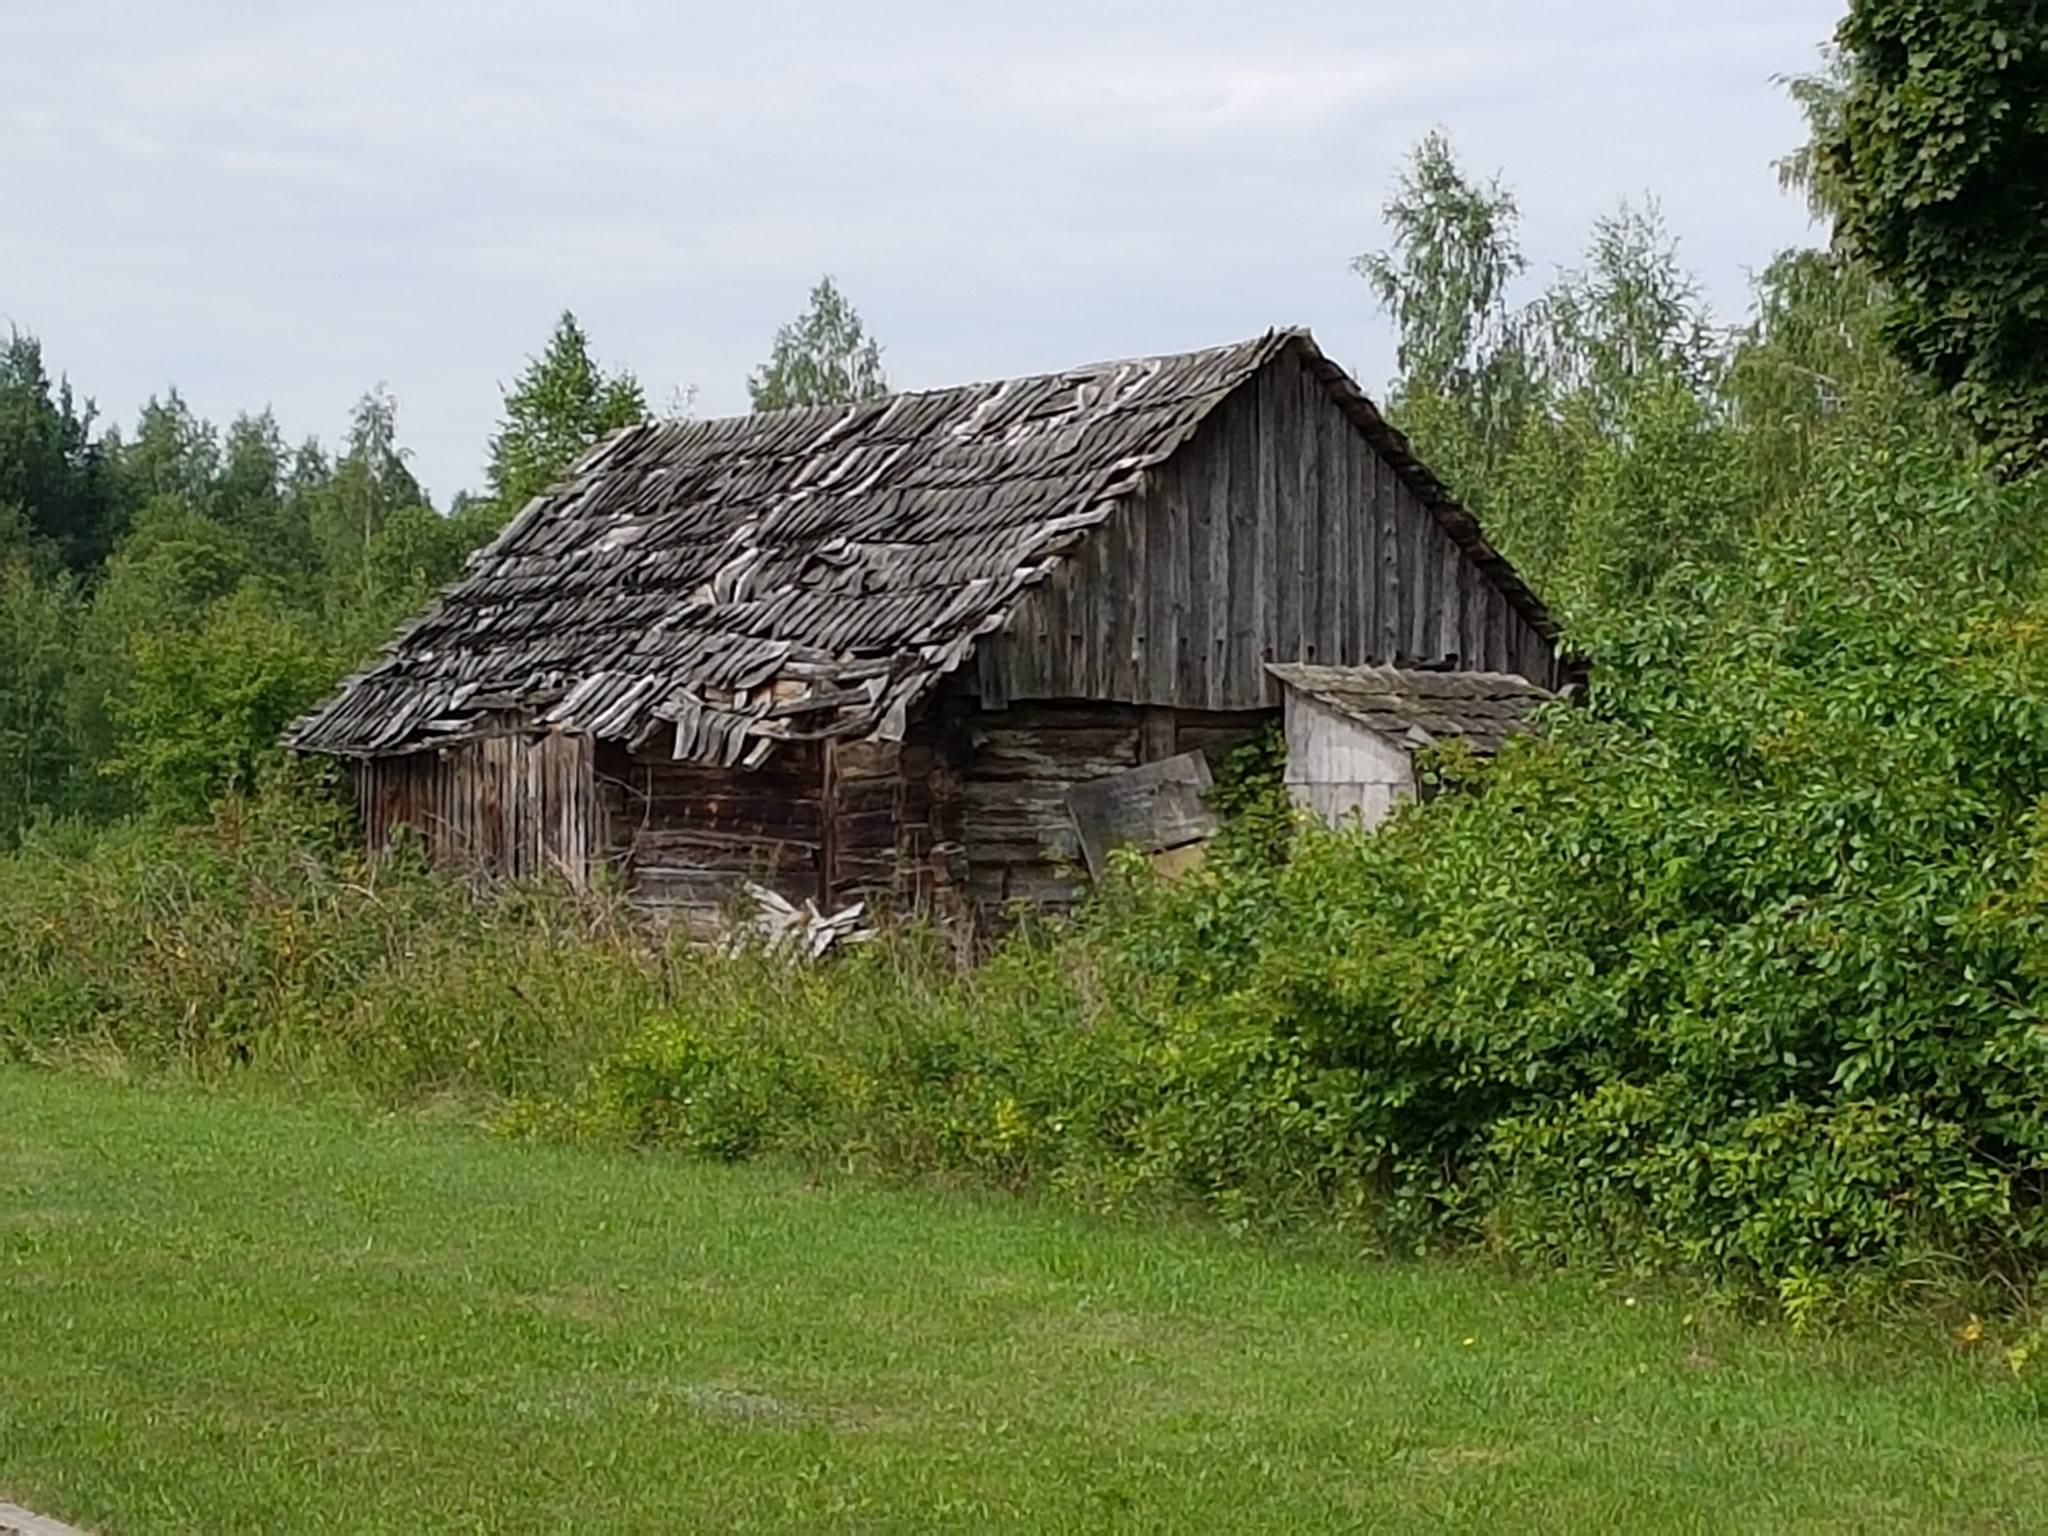 НА ФОТО: Брюссельскому гостю показали самую обычную литовскую деревню, находящуюся всего в 26 км от Вильнюса